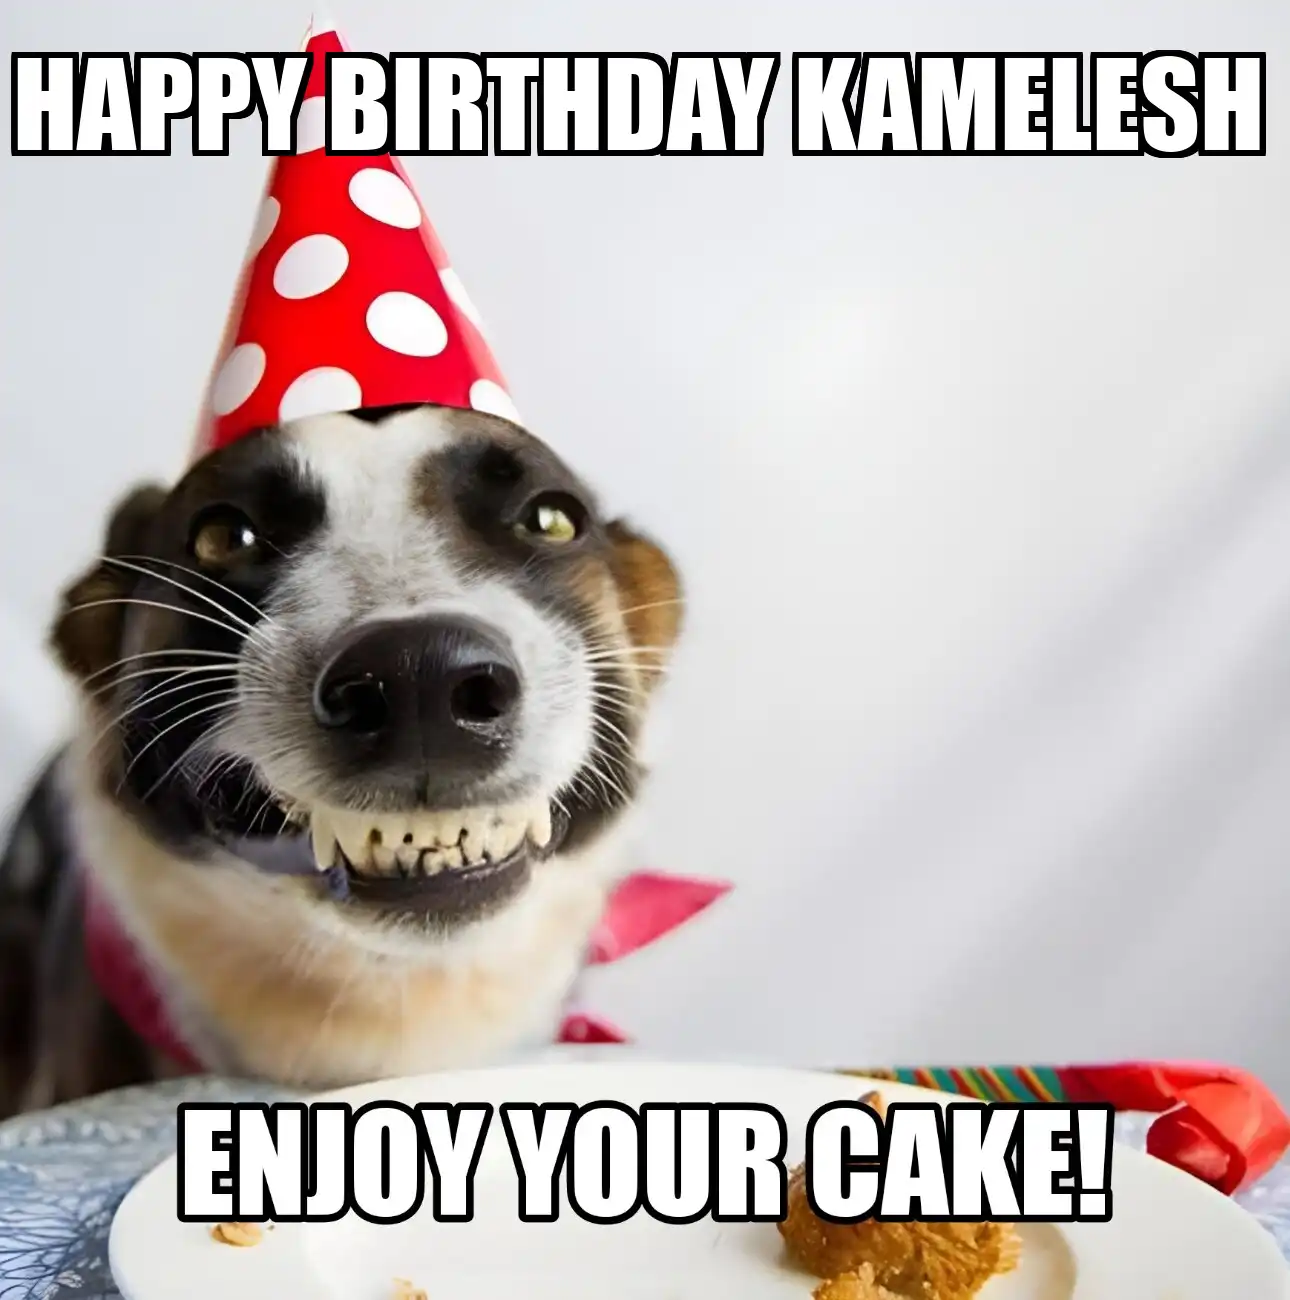 Happy Birthday Kamelesh Enjoy Your Cake Dog Meme